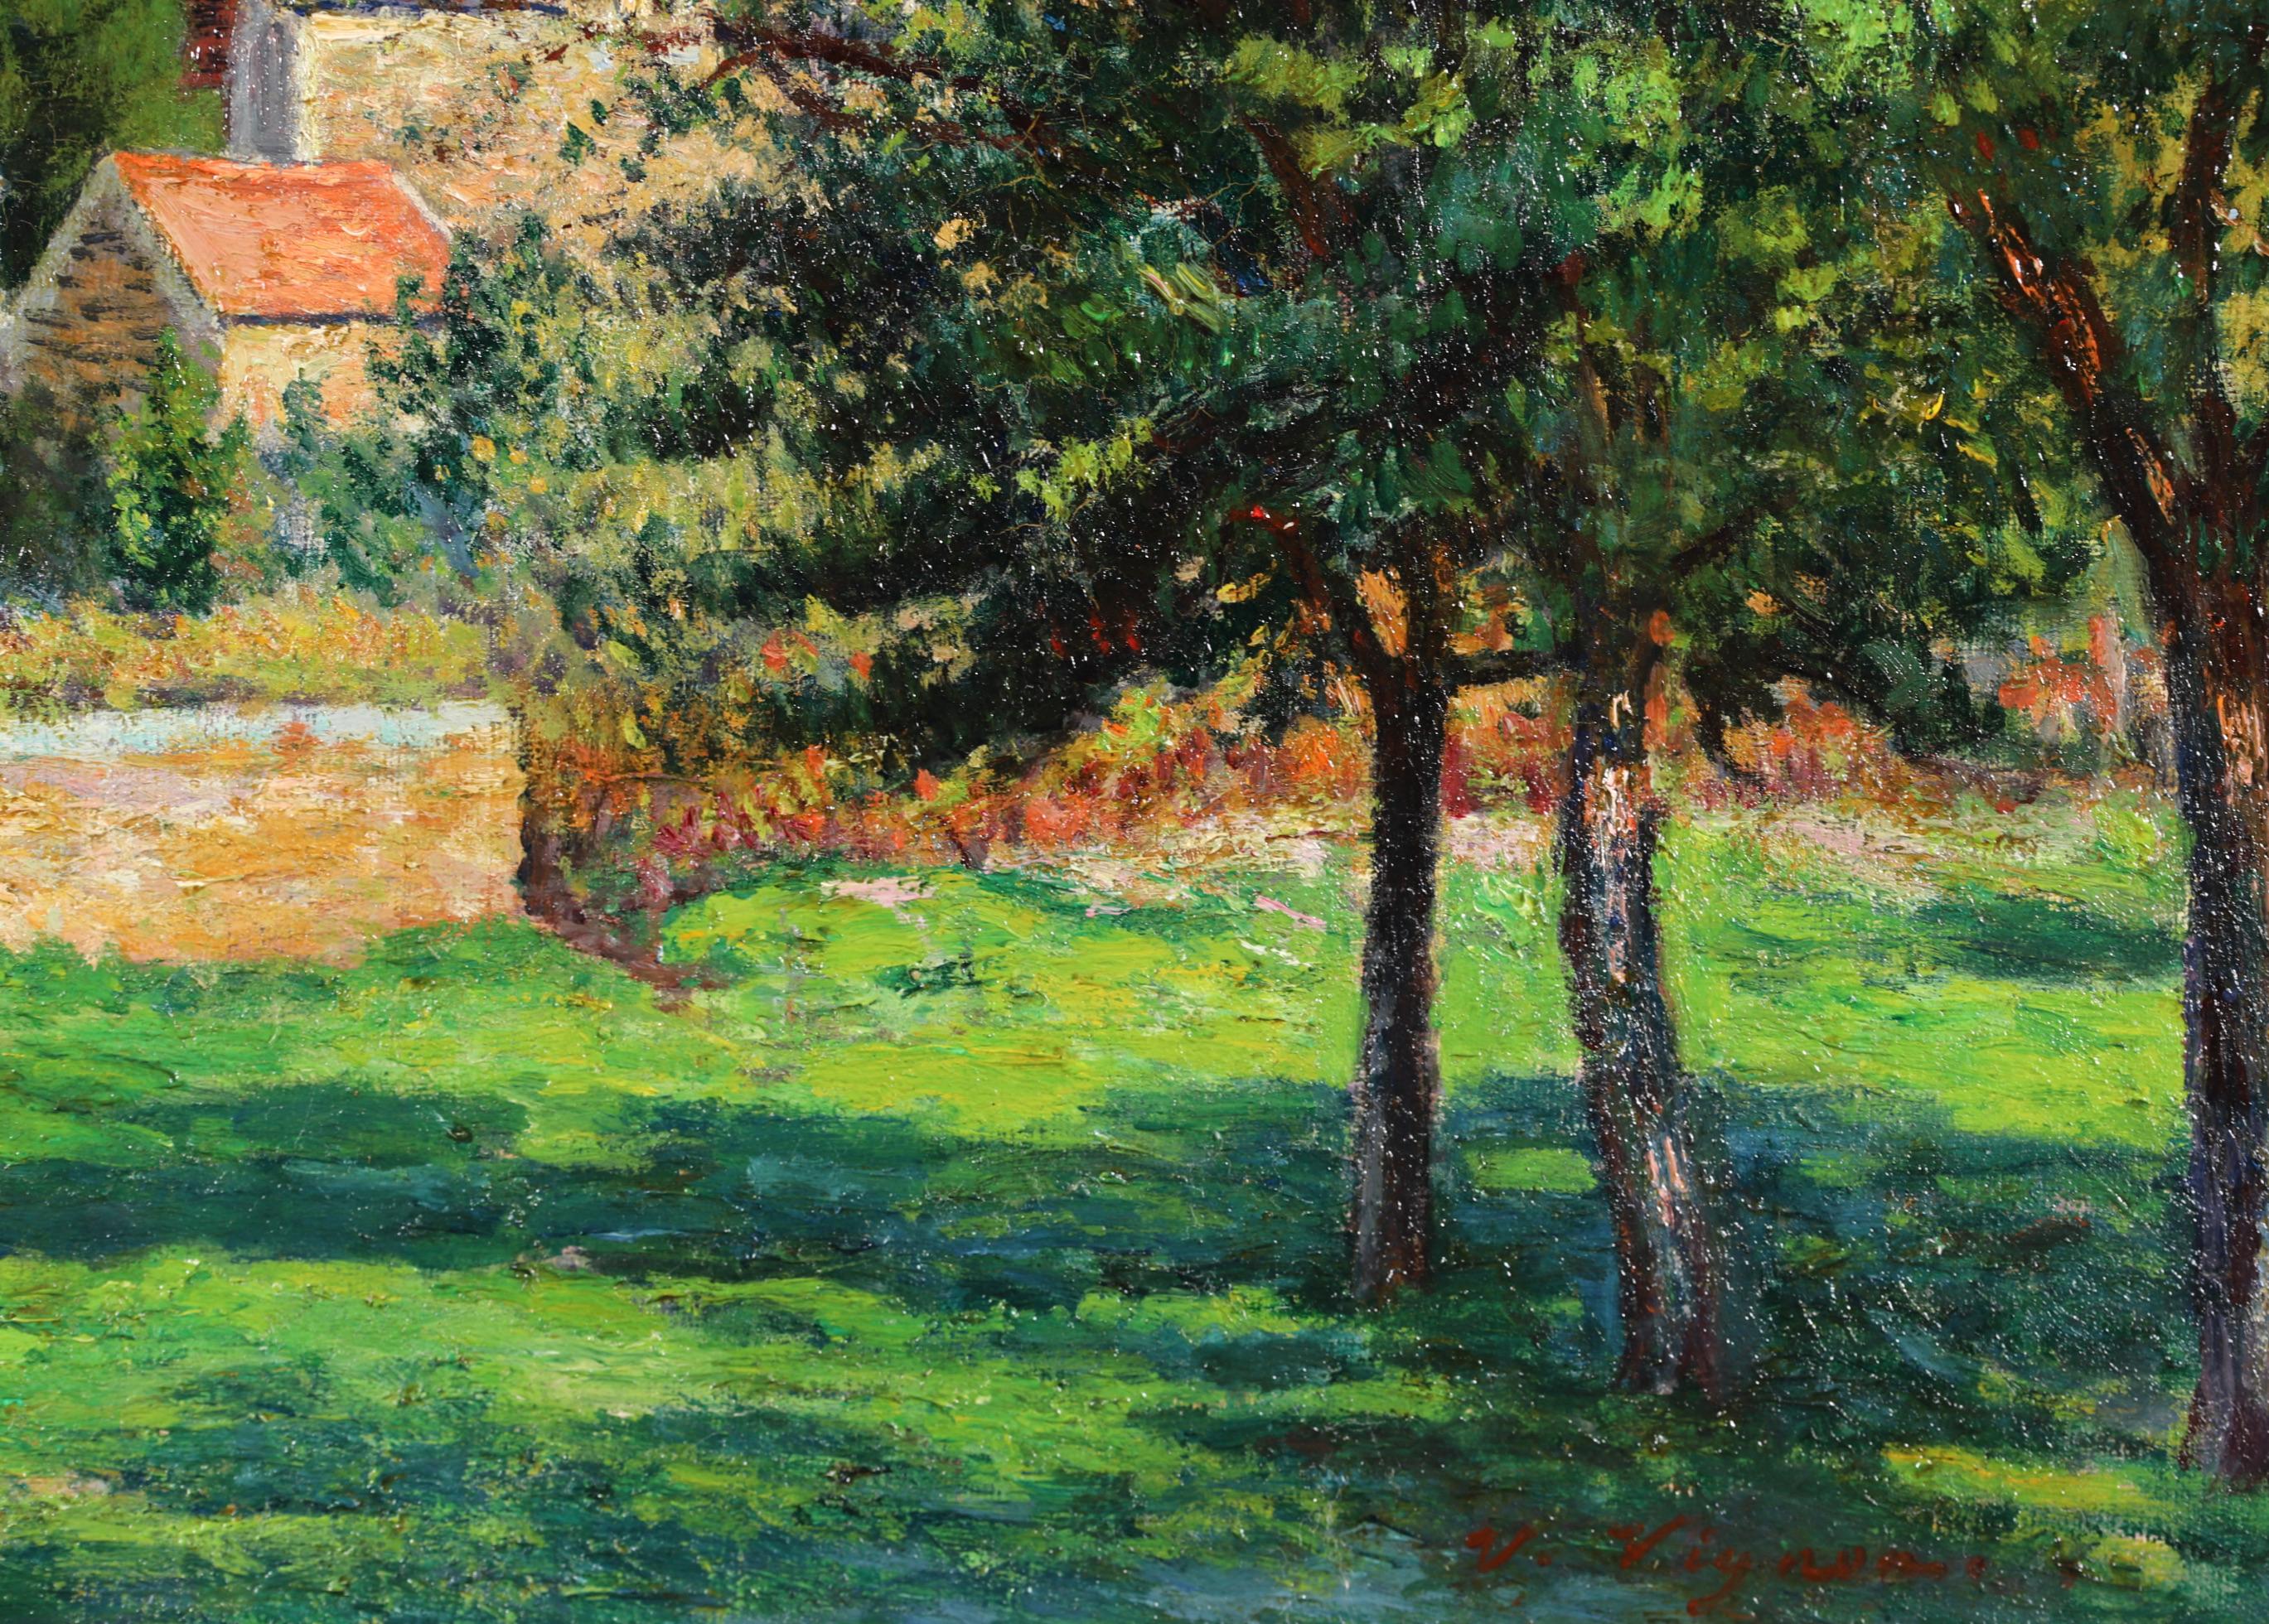 La Ferme - Impressionist Landscape Oil Painting by Victor Vignon 6